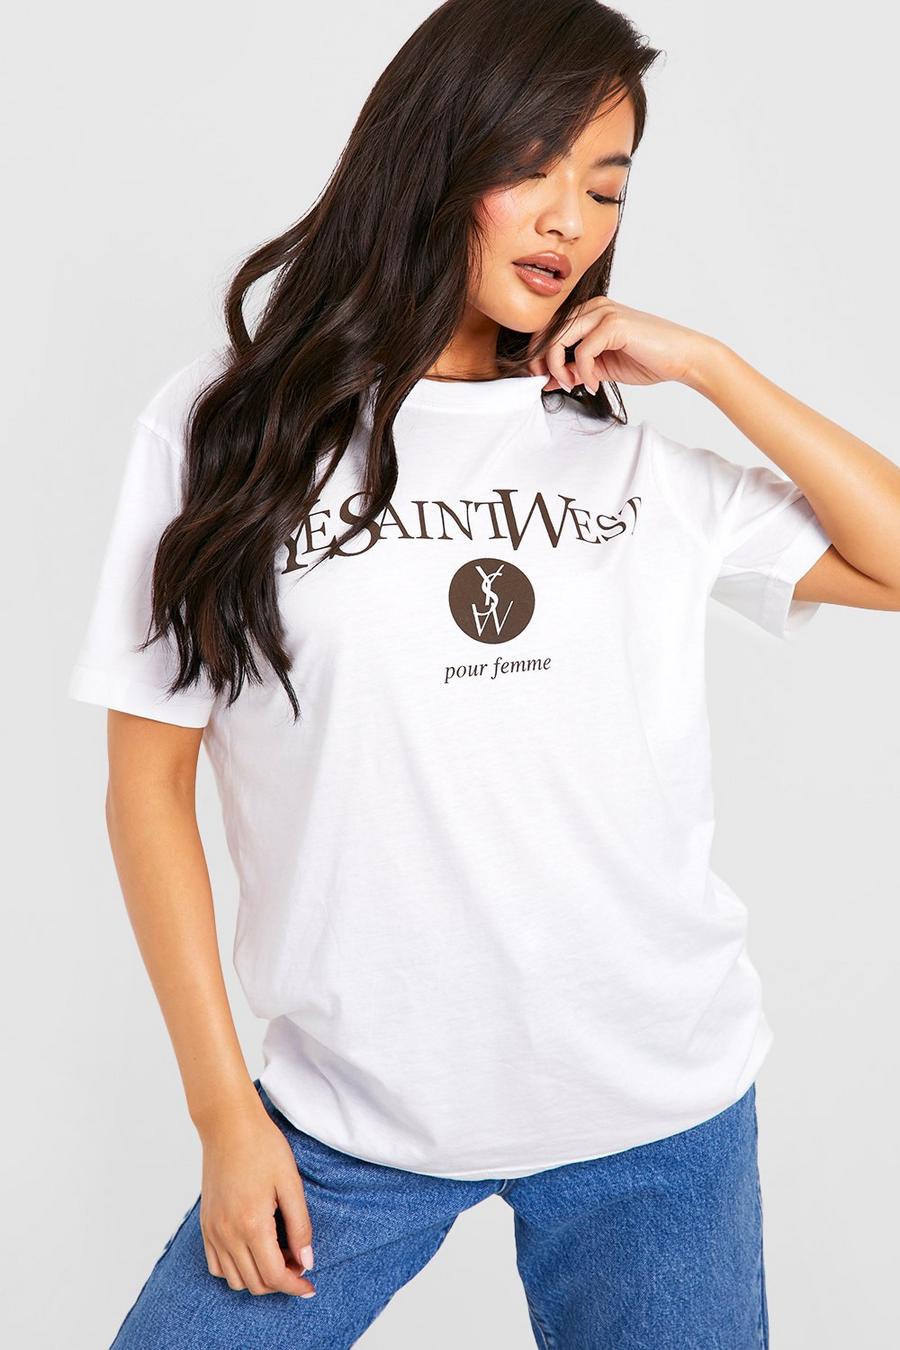 White Ye Saint West Pour Femme Oversized T-shirt image number 1